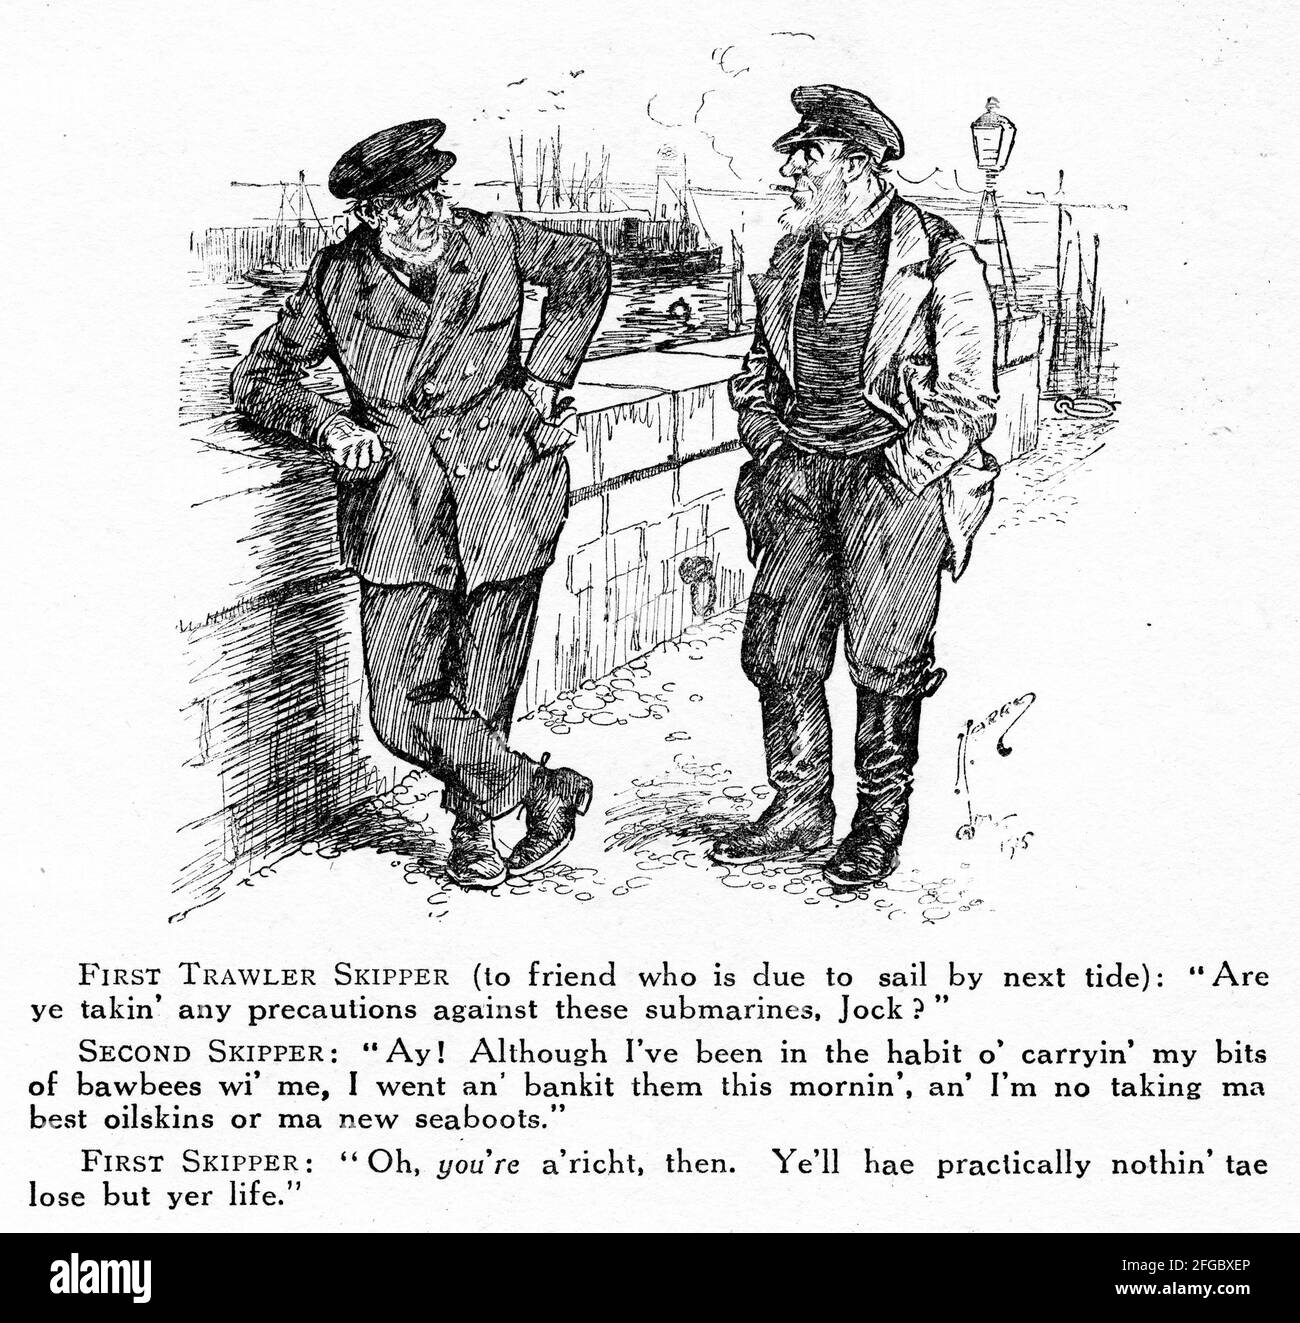 Grabado de dos pescadores ingleses discutiendo la amenaza de los submarinos alemanes durante la Primera Guerra Mundial. De la revista Punch. Foto de stock